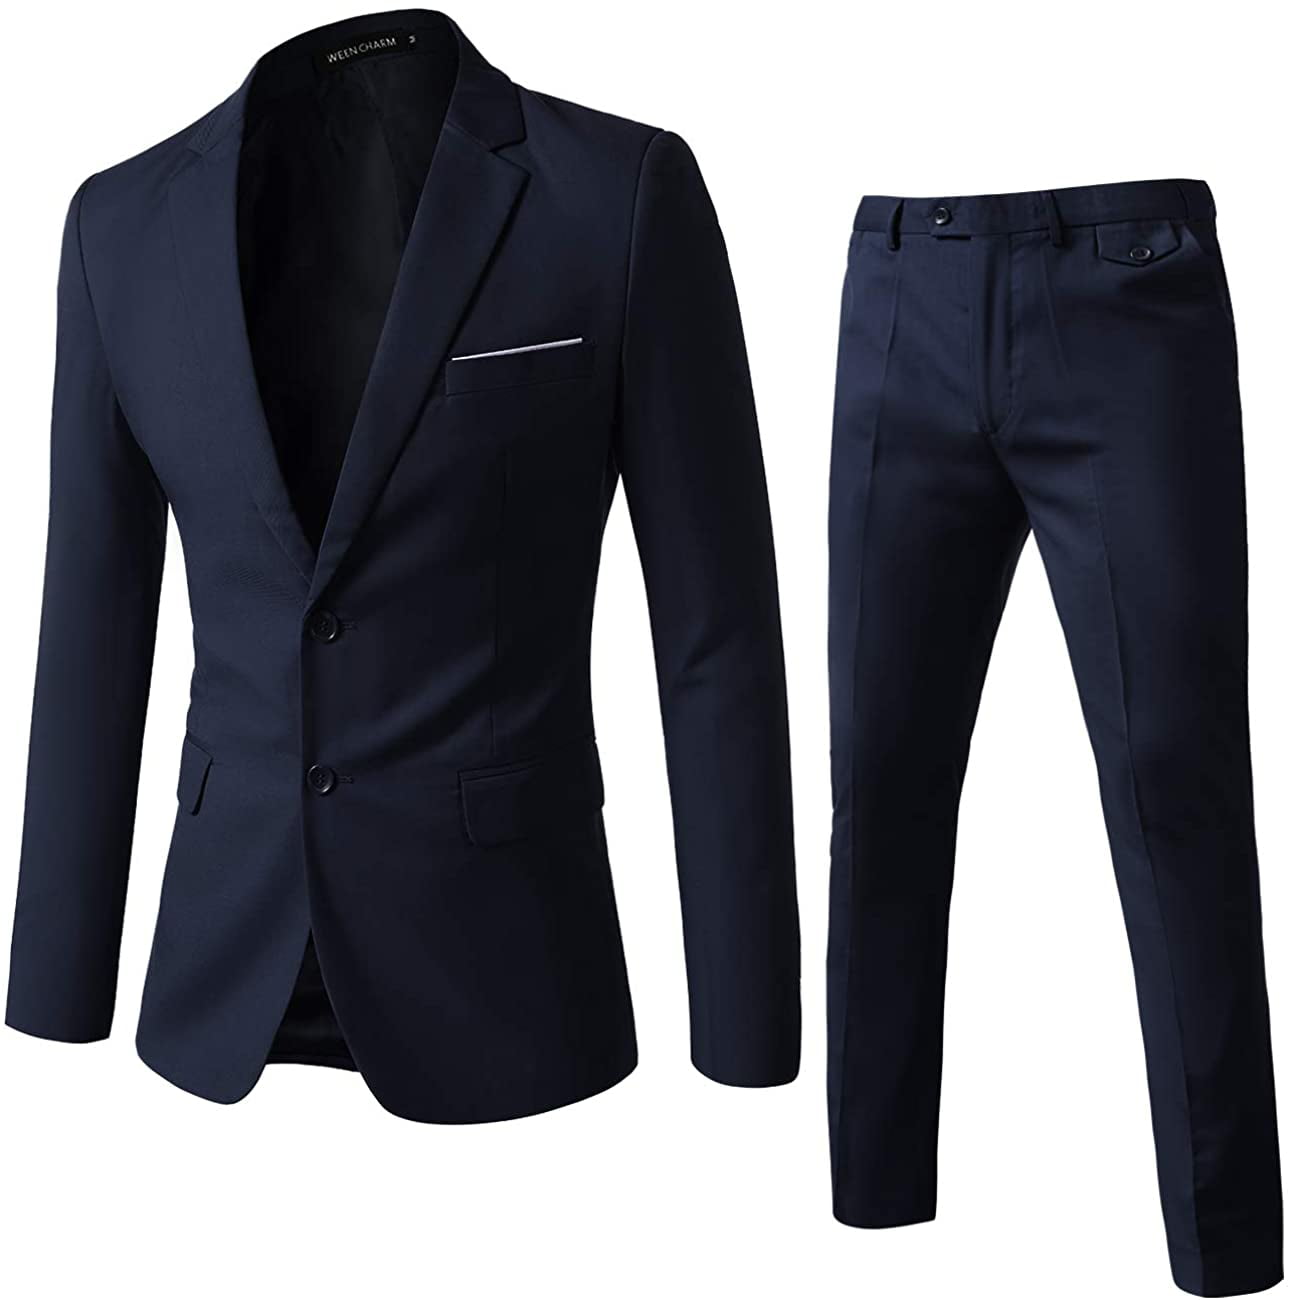 WEEN CHARM Mens Suits One Button Slim Fit 2-Piece Suit Blazer Jacket Pants Set